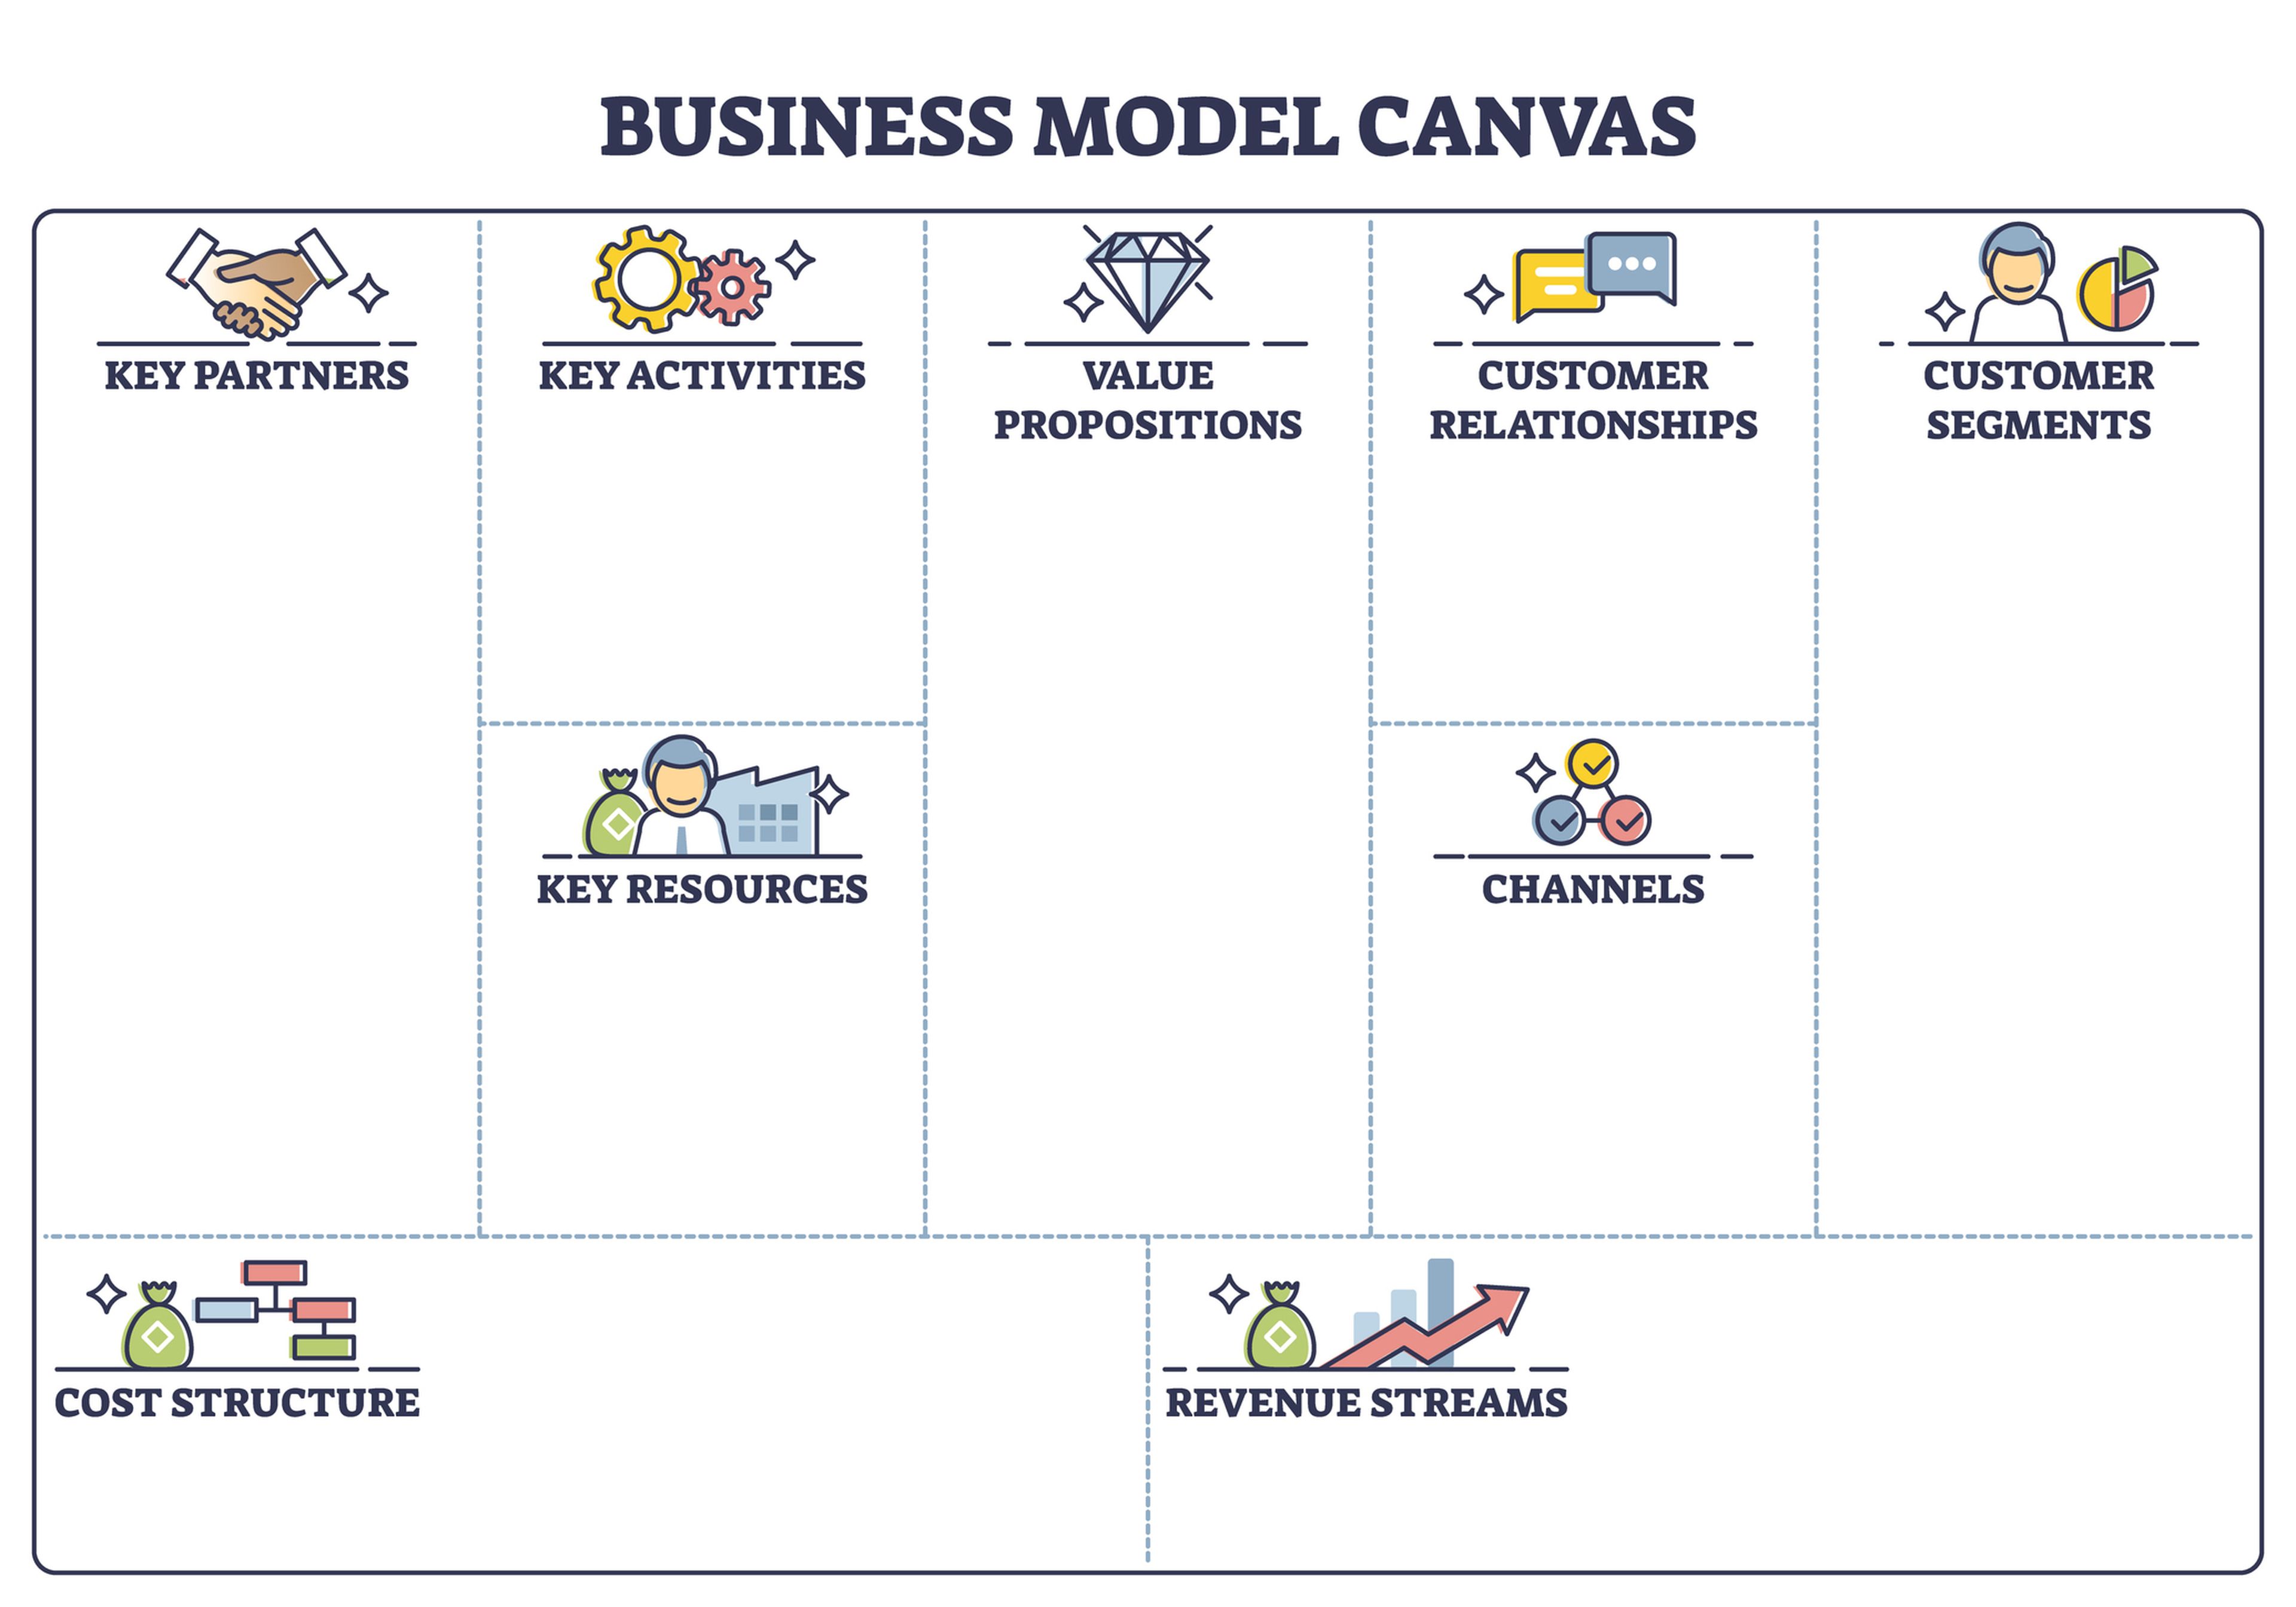 Plano gráfico del Business Model Canvas desarrollado por Osterwalder.